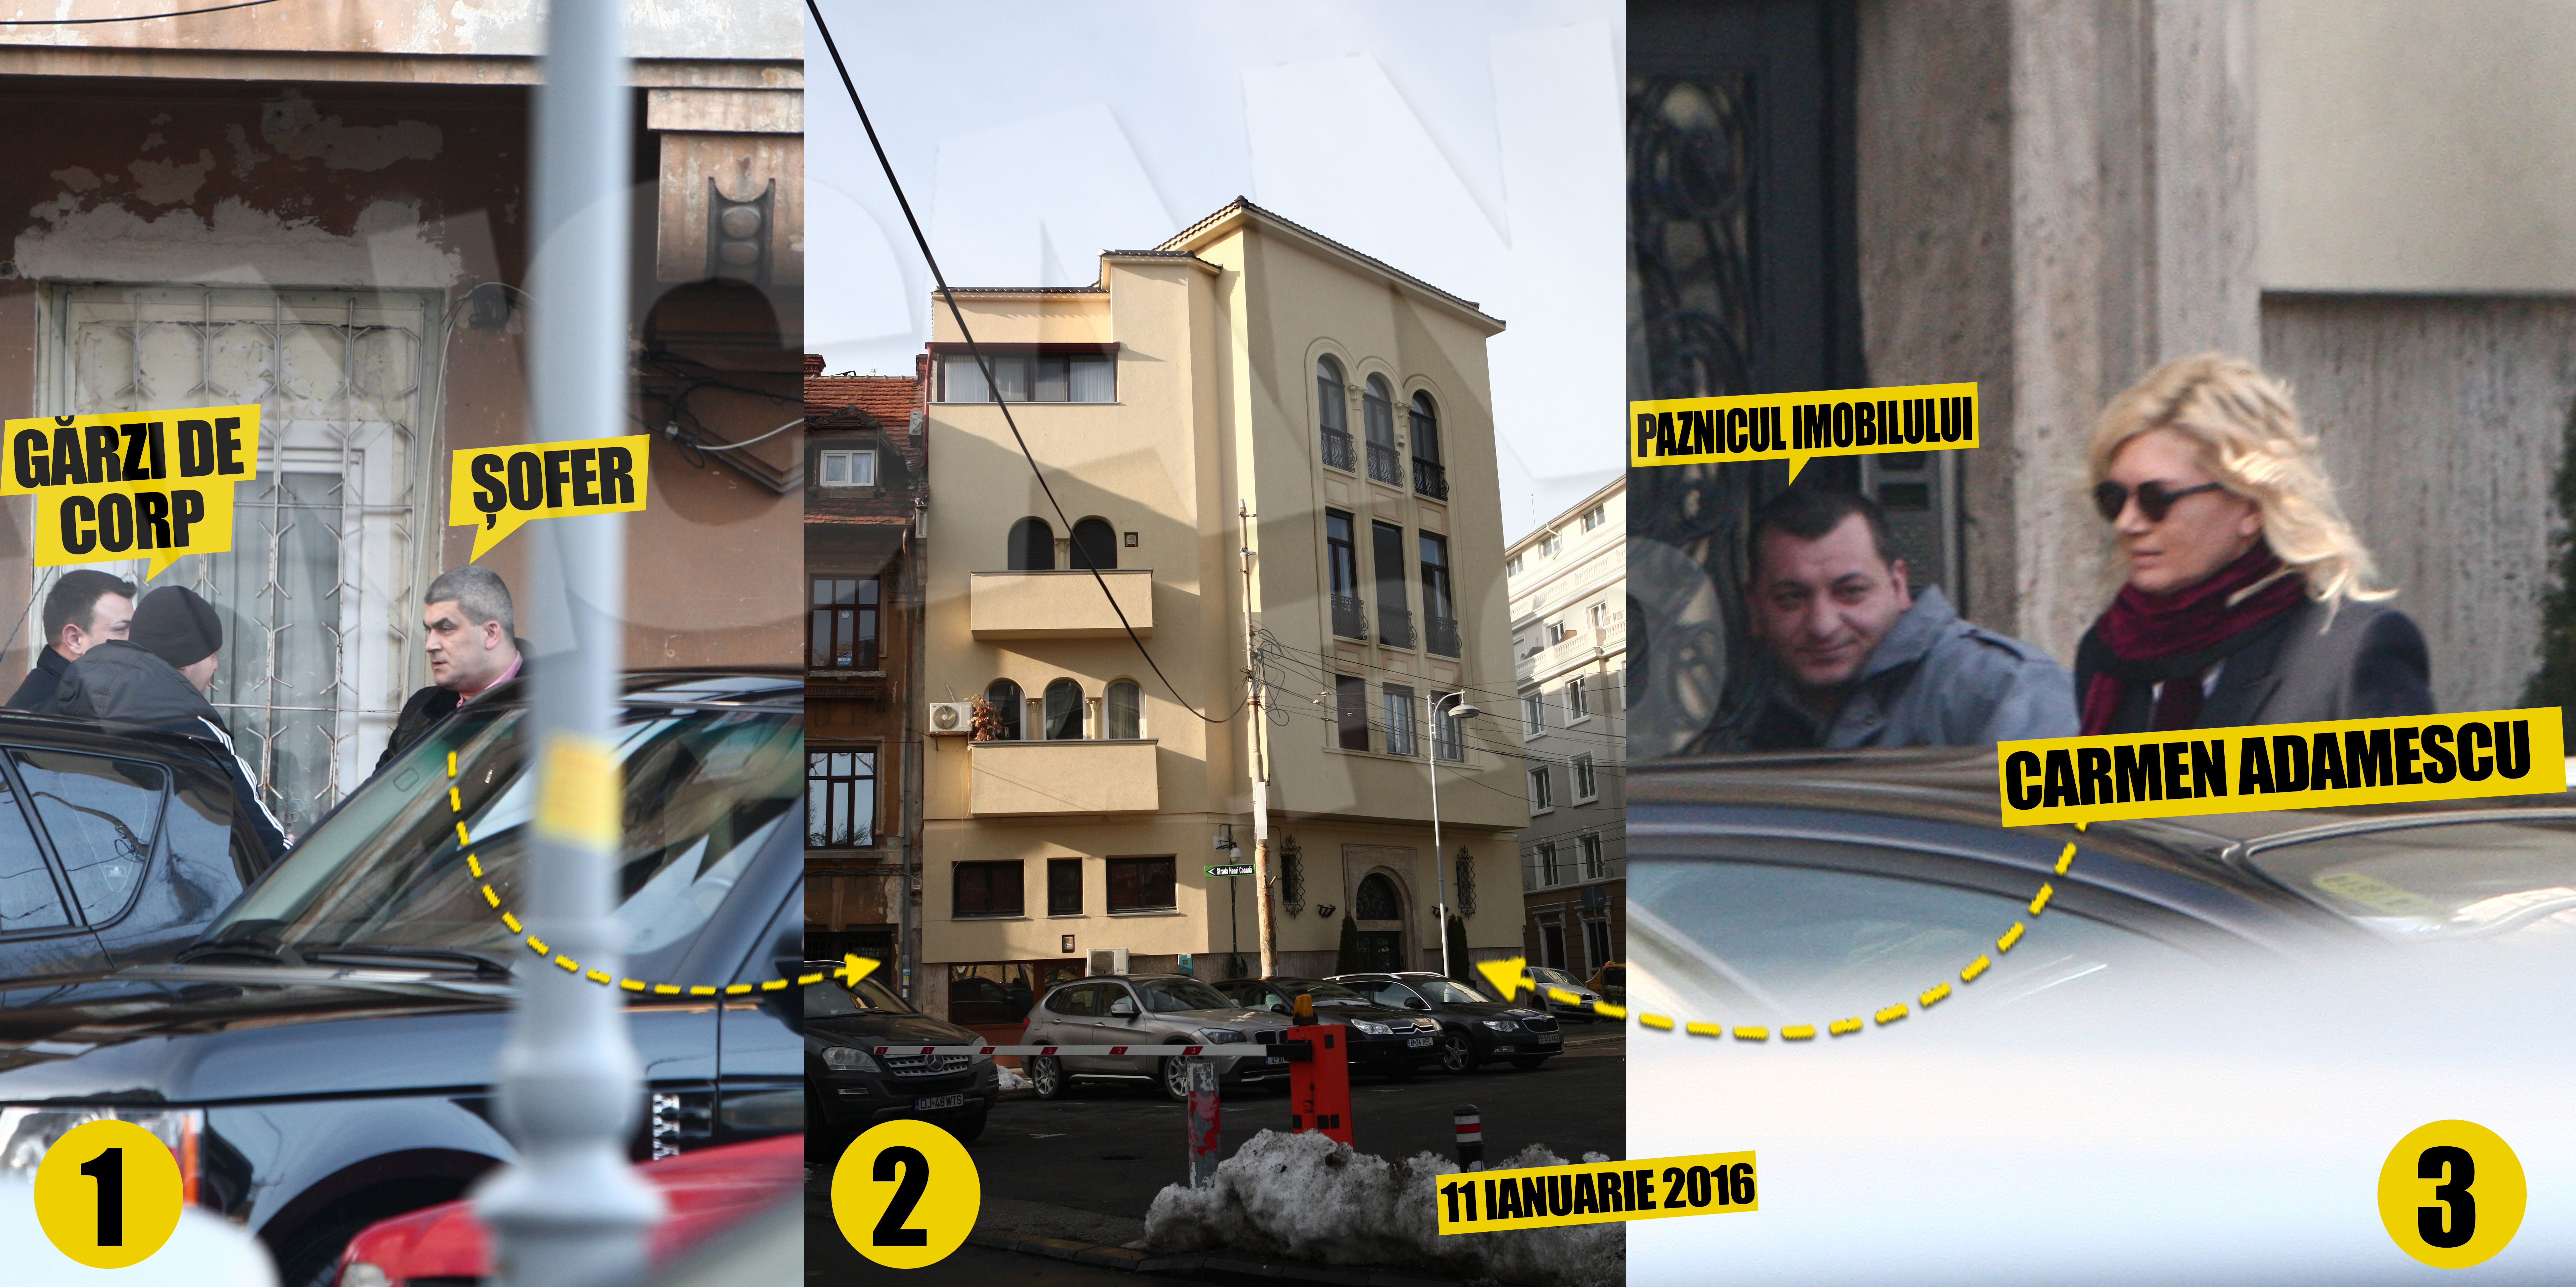 Imobilul (imaginea numarul 2) in care Carmen Adamescu locuieste este mai pazit decat o unitate militara! Soferul si doua garzi de corp supravegheaza atent zona (imaginea numarul 1) inainte ca sefa lor sa paraseasca 